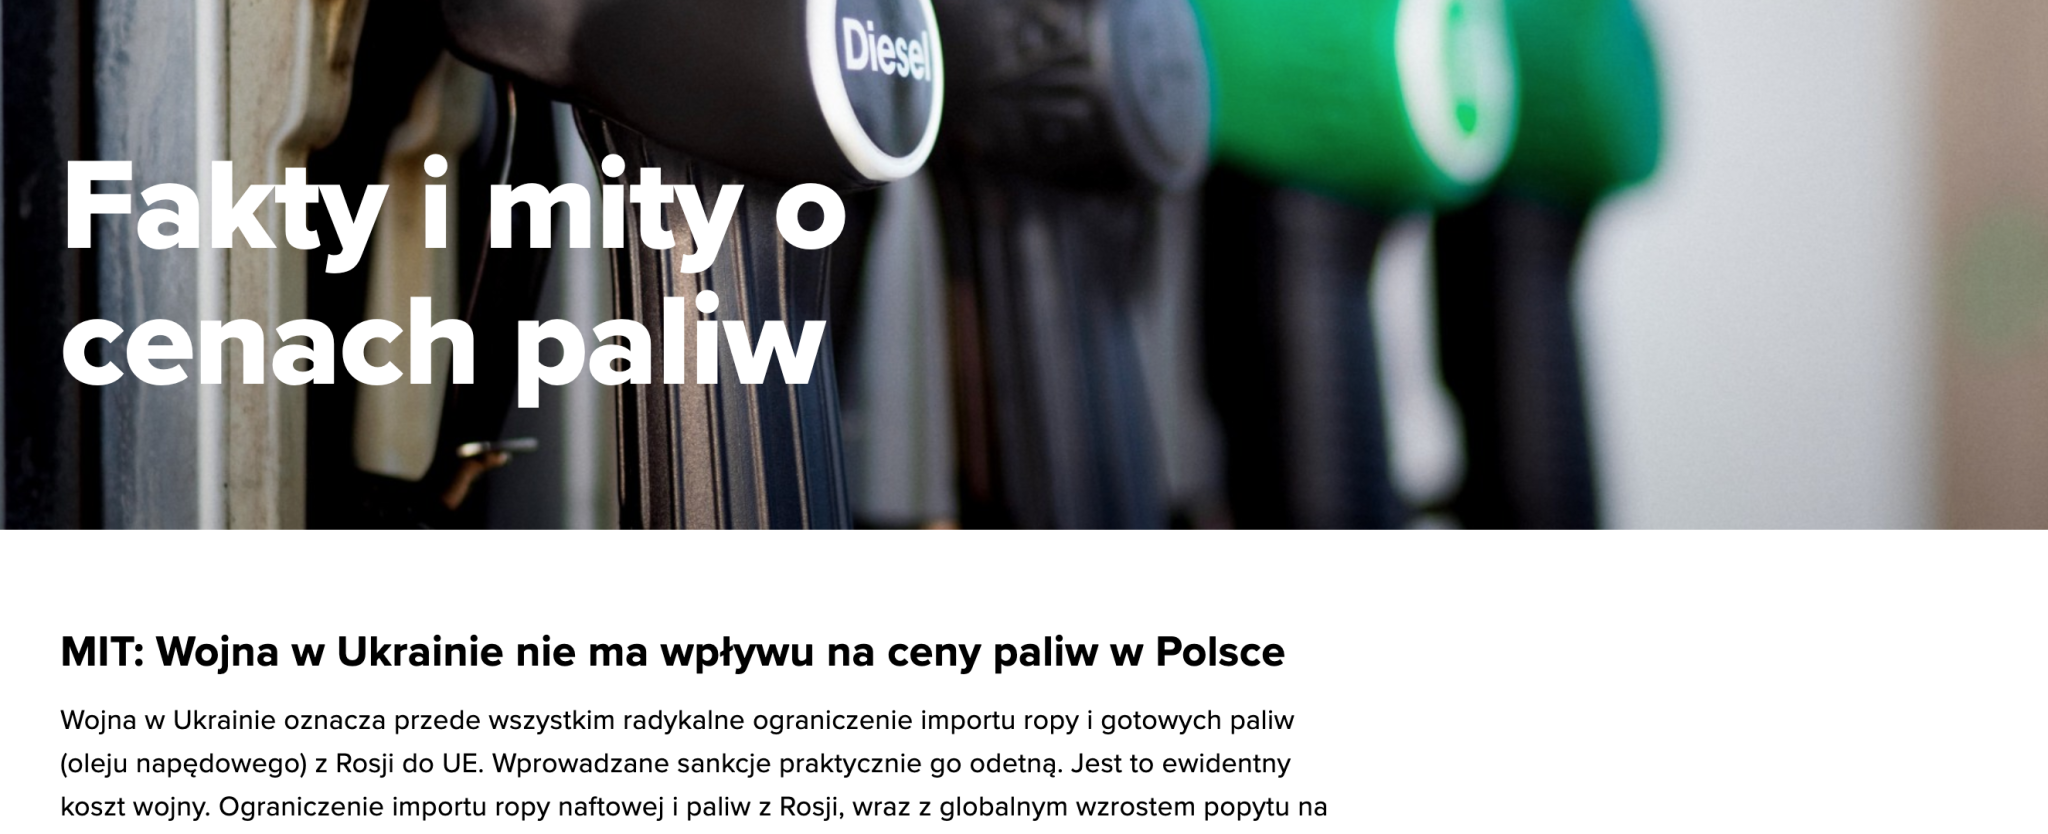 Tekst "Fakty i mity o cenach paliw" na stronie Orlenu